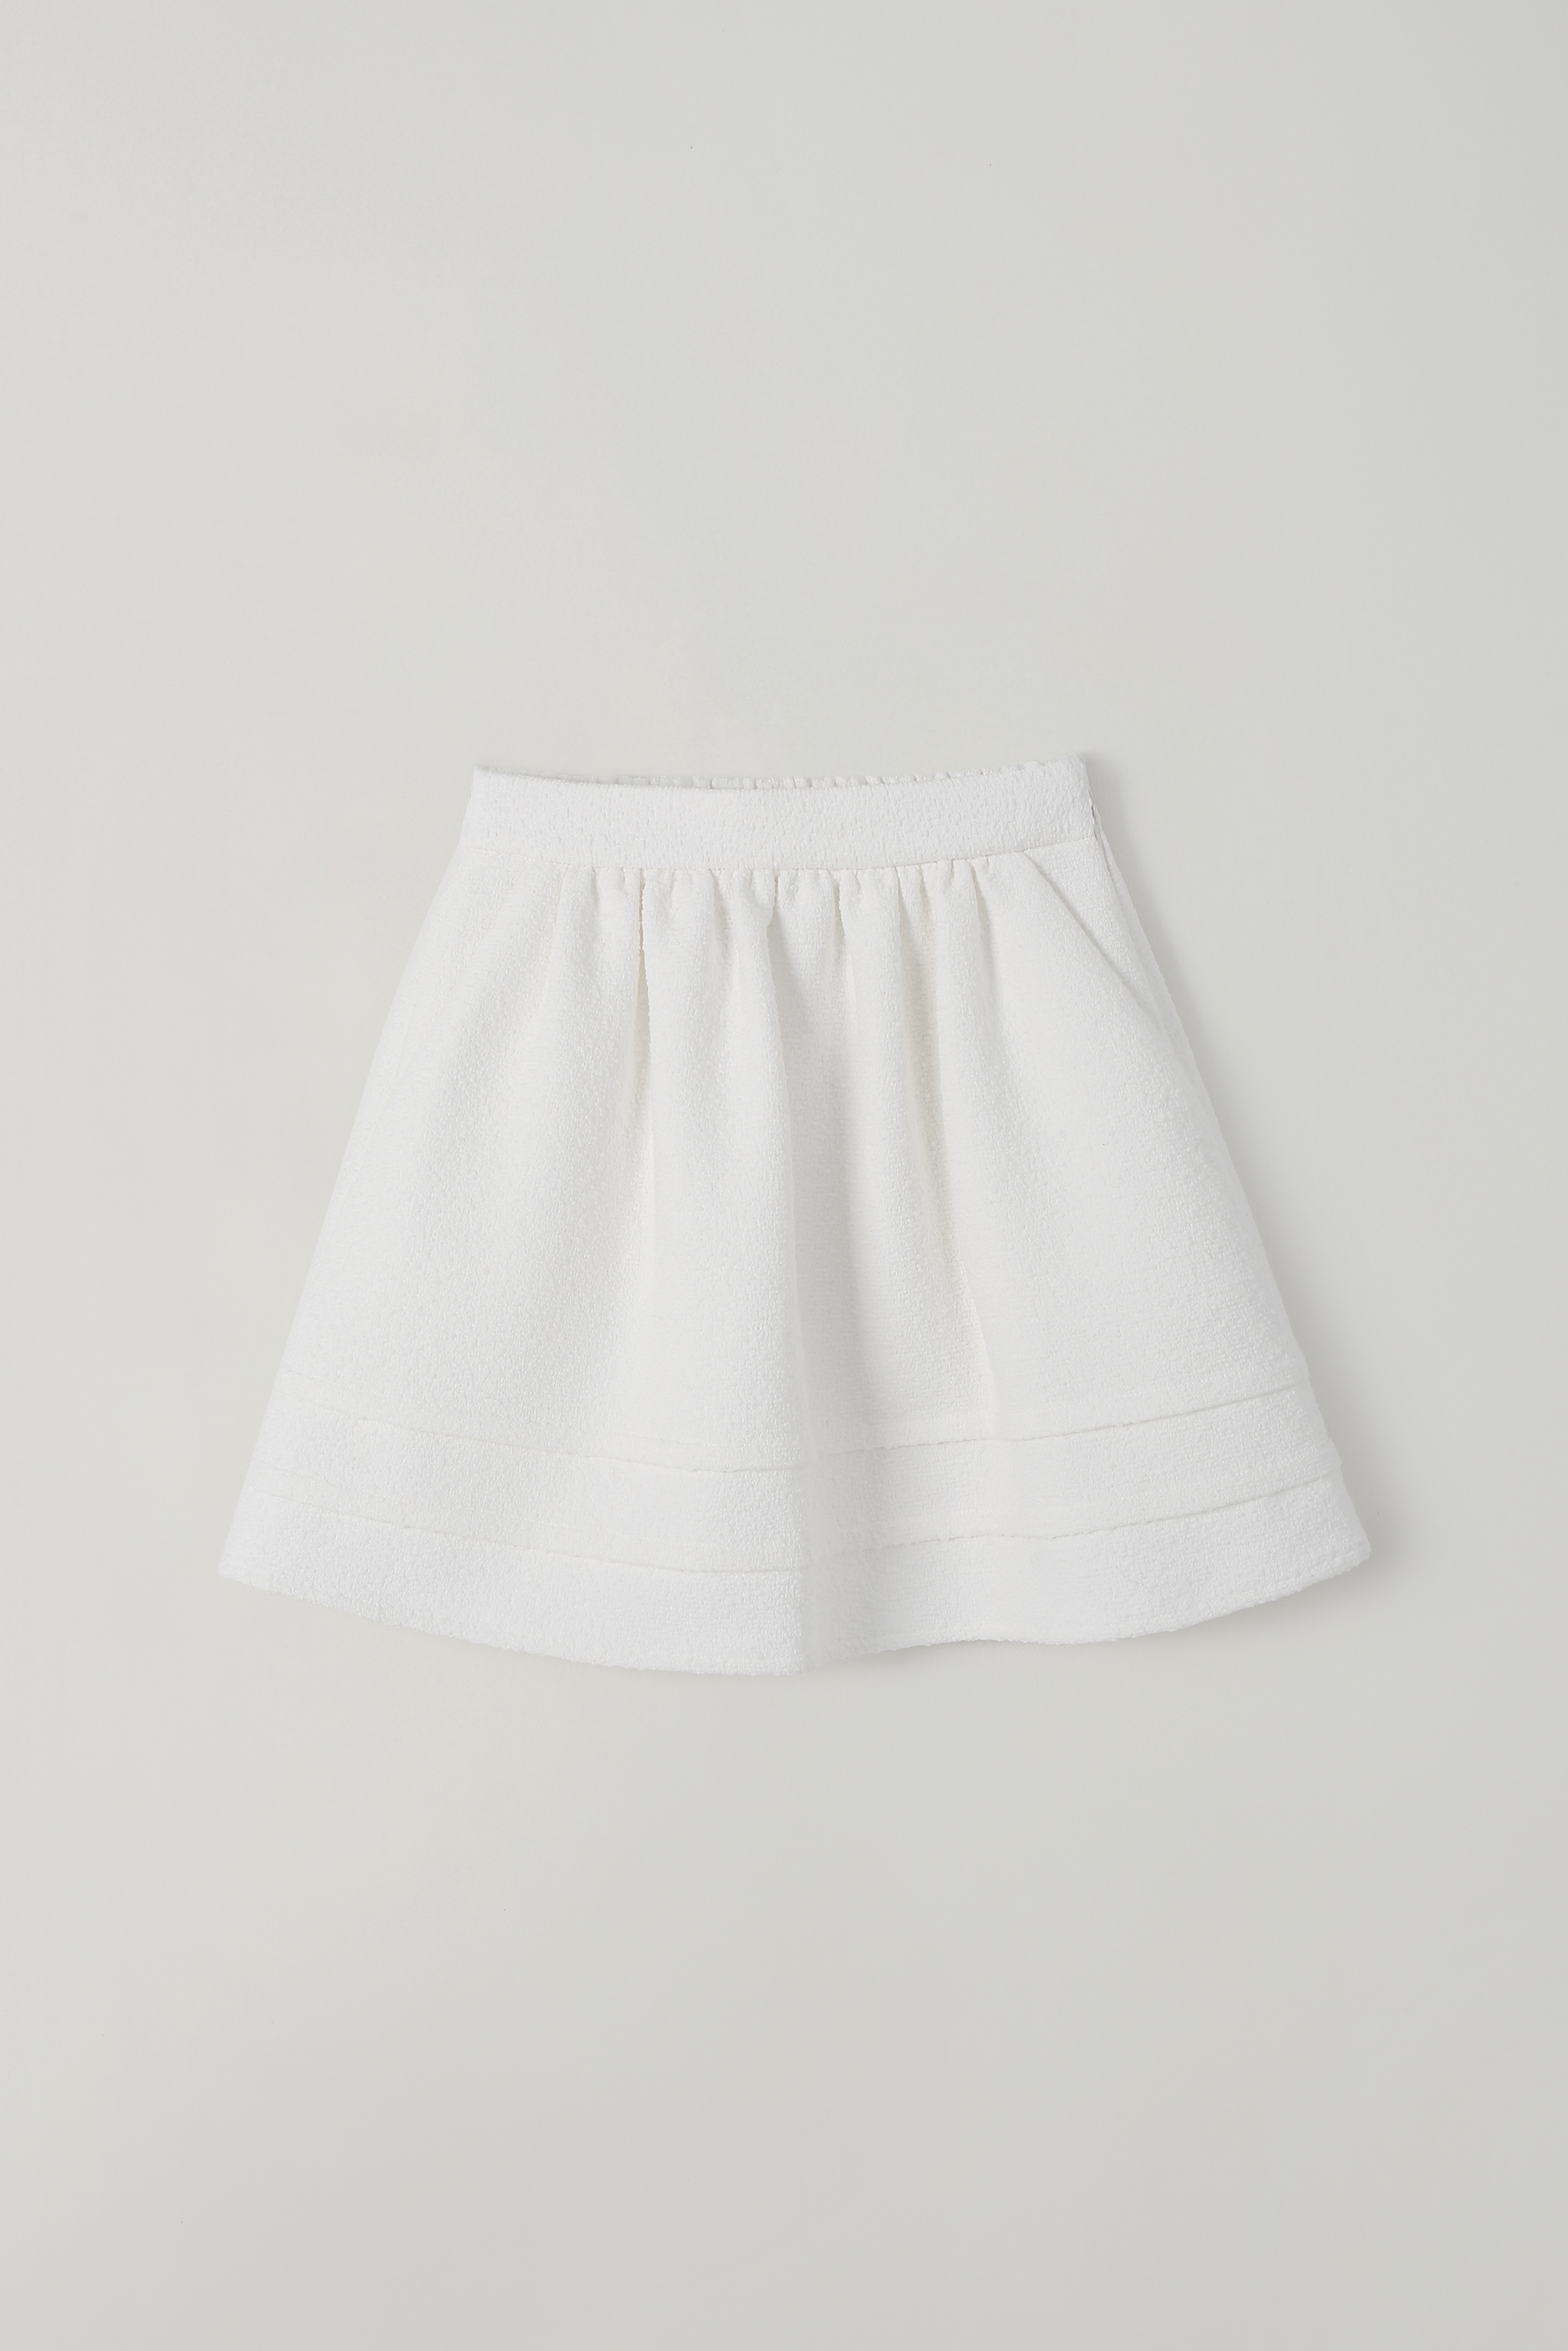 T/T Boucle flouncy skirt (white)